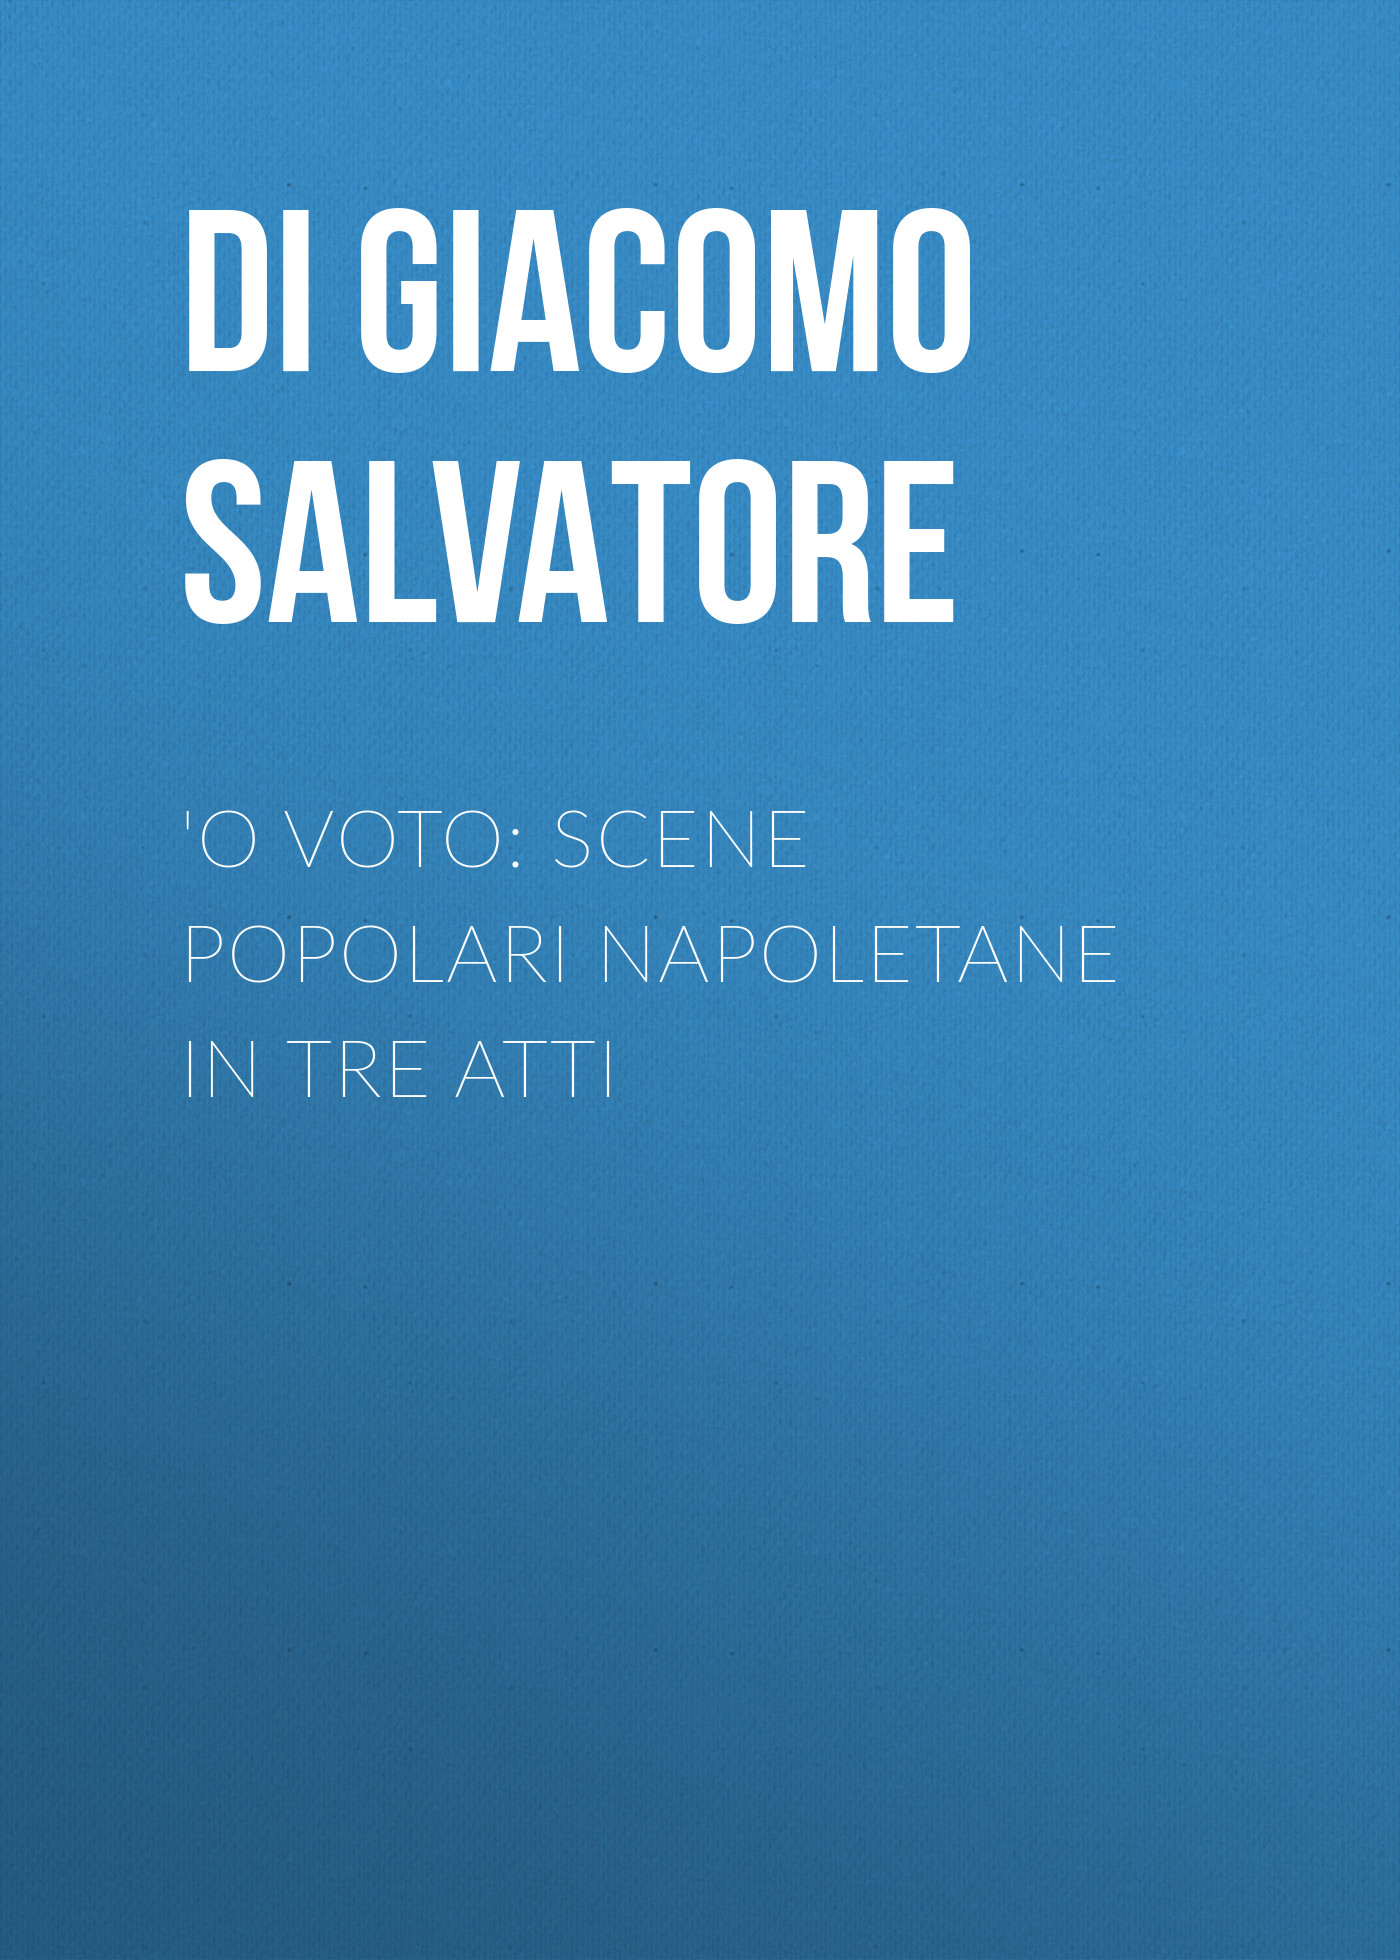 'O voto: Scene popolari napoletane in tre atti